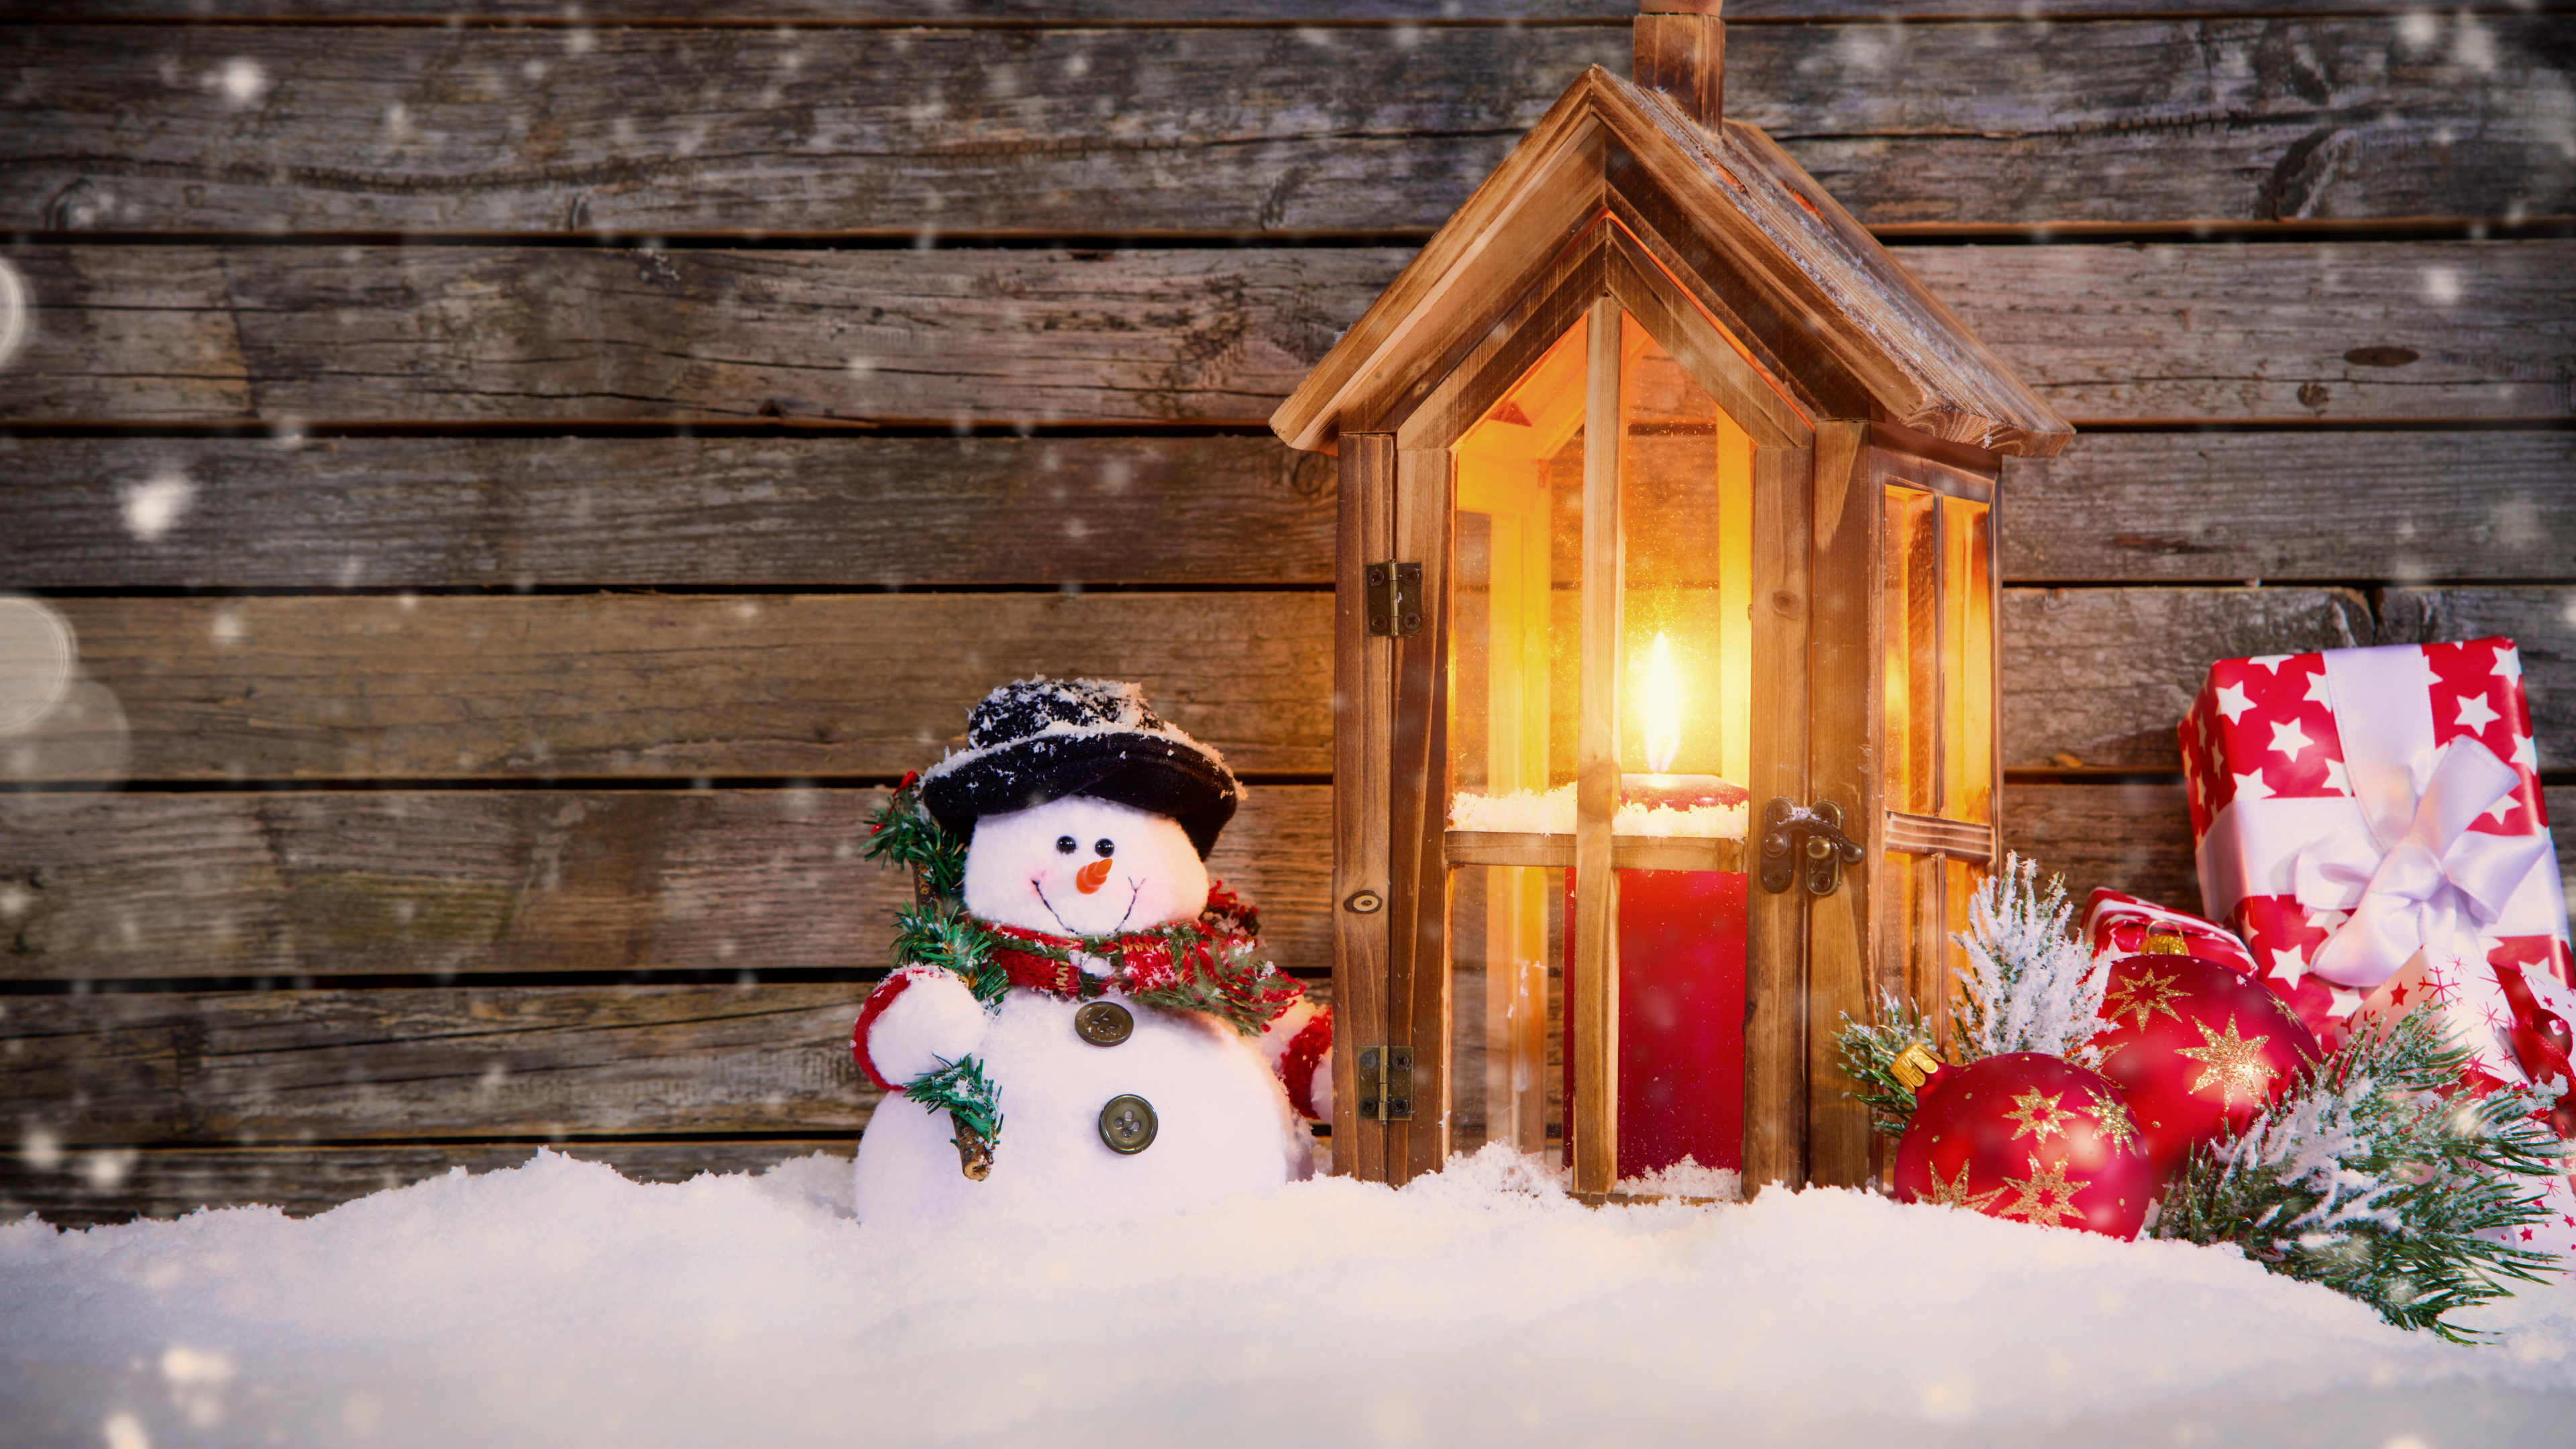 圣诞节那天, 雪人, 圣诞装饰, 圣诞节的装饰品, 冬天 壁纸 3840x2160 允许